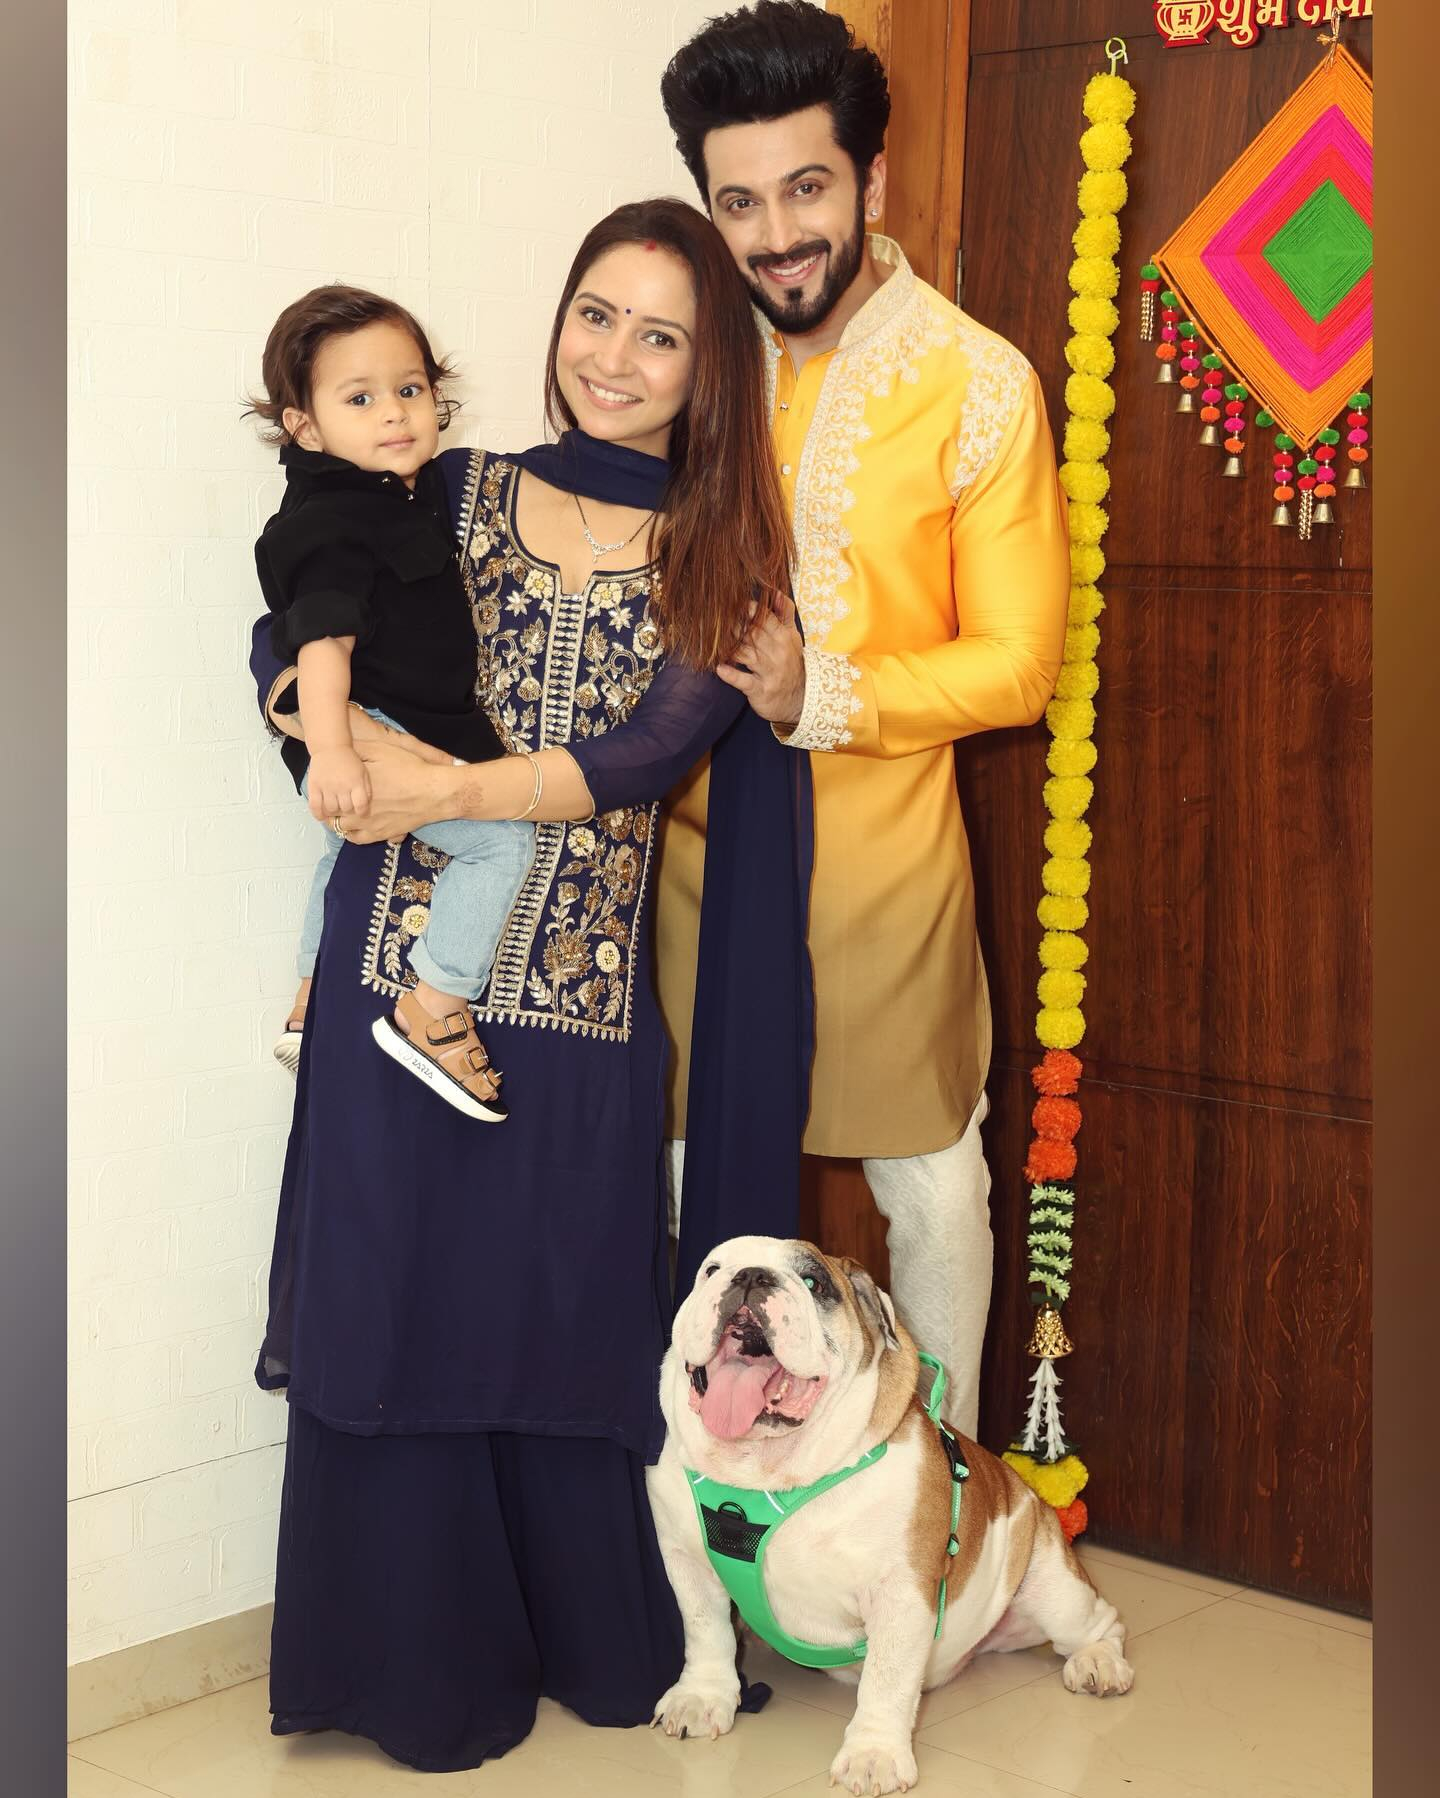 Dheeraj Dhoopar-Vinny Arora Diwali celebration with son Zayn